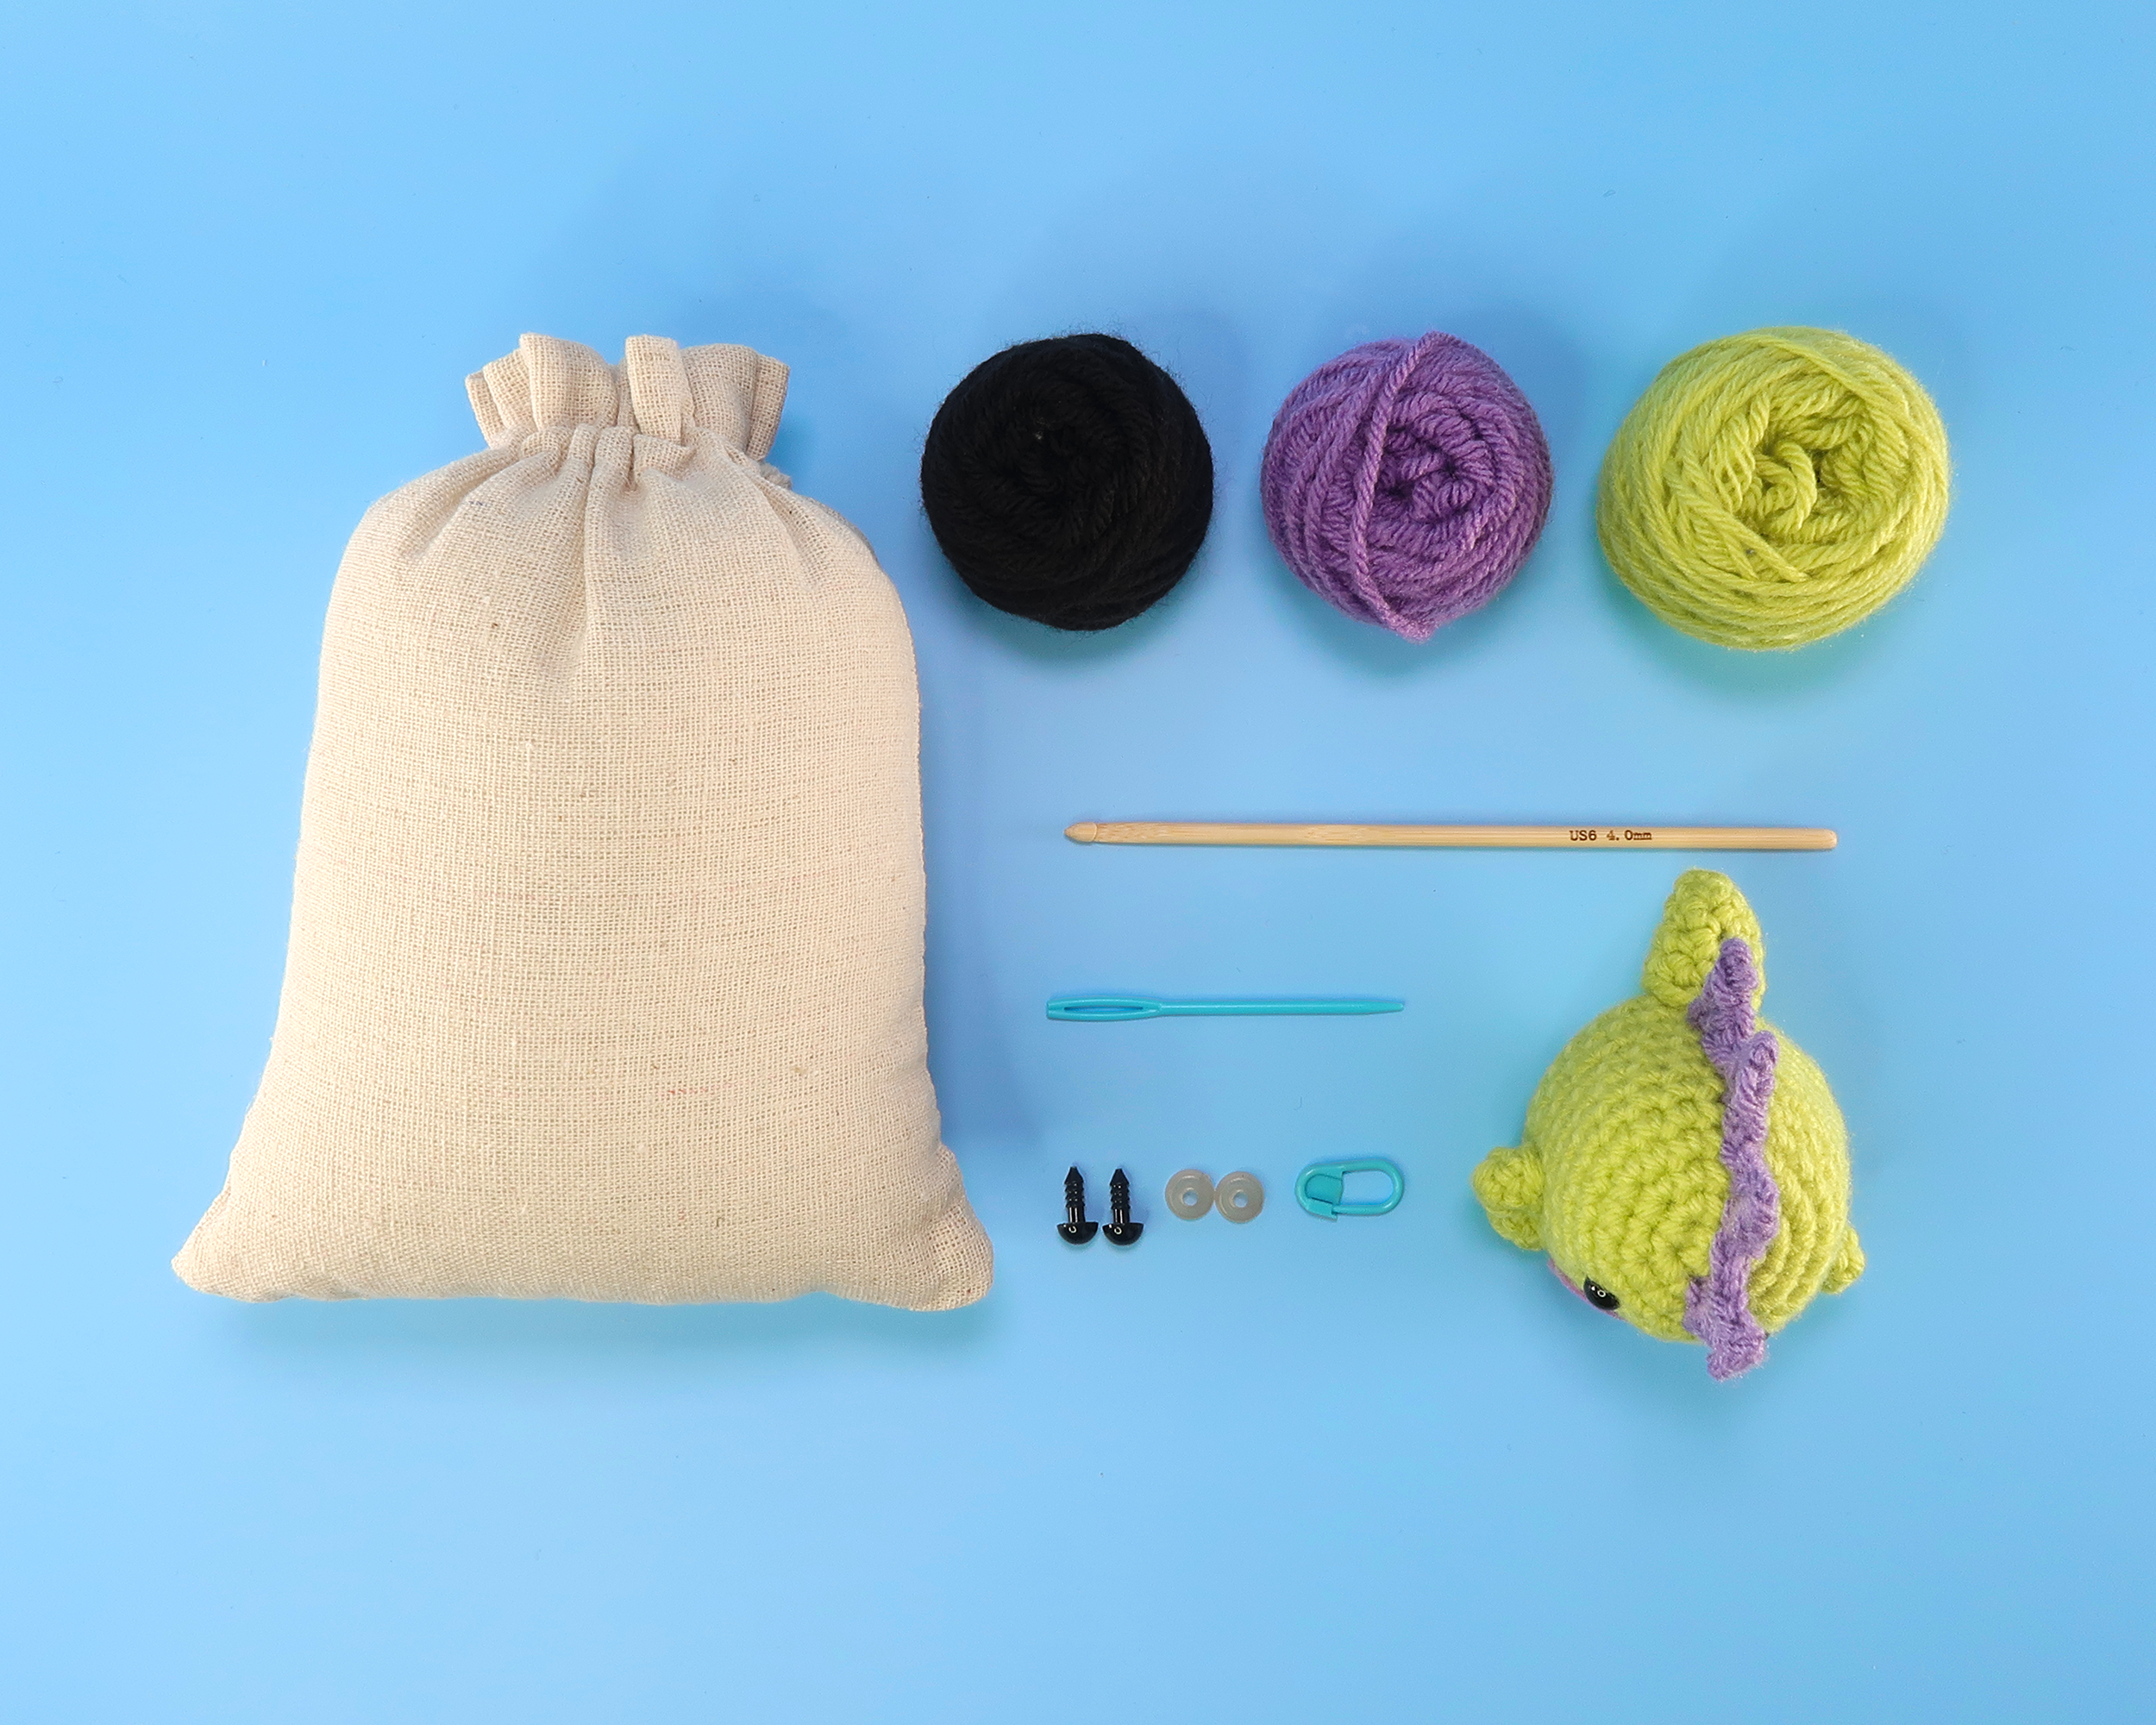 DIY Cartoon Dinosaur Crochet Kit With Crochet Hook Marker Buckle